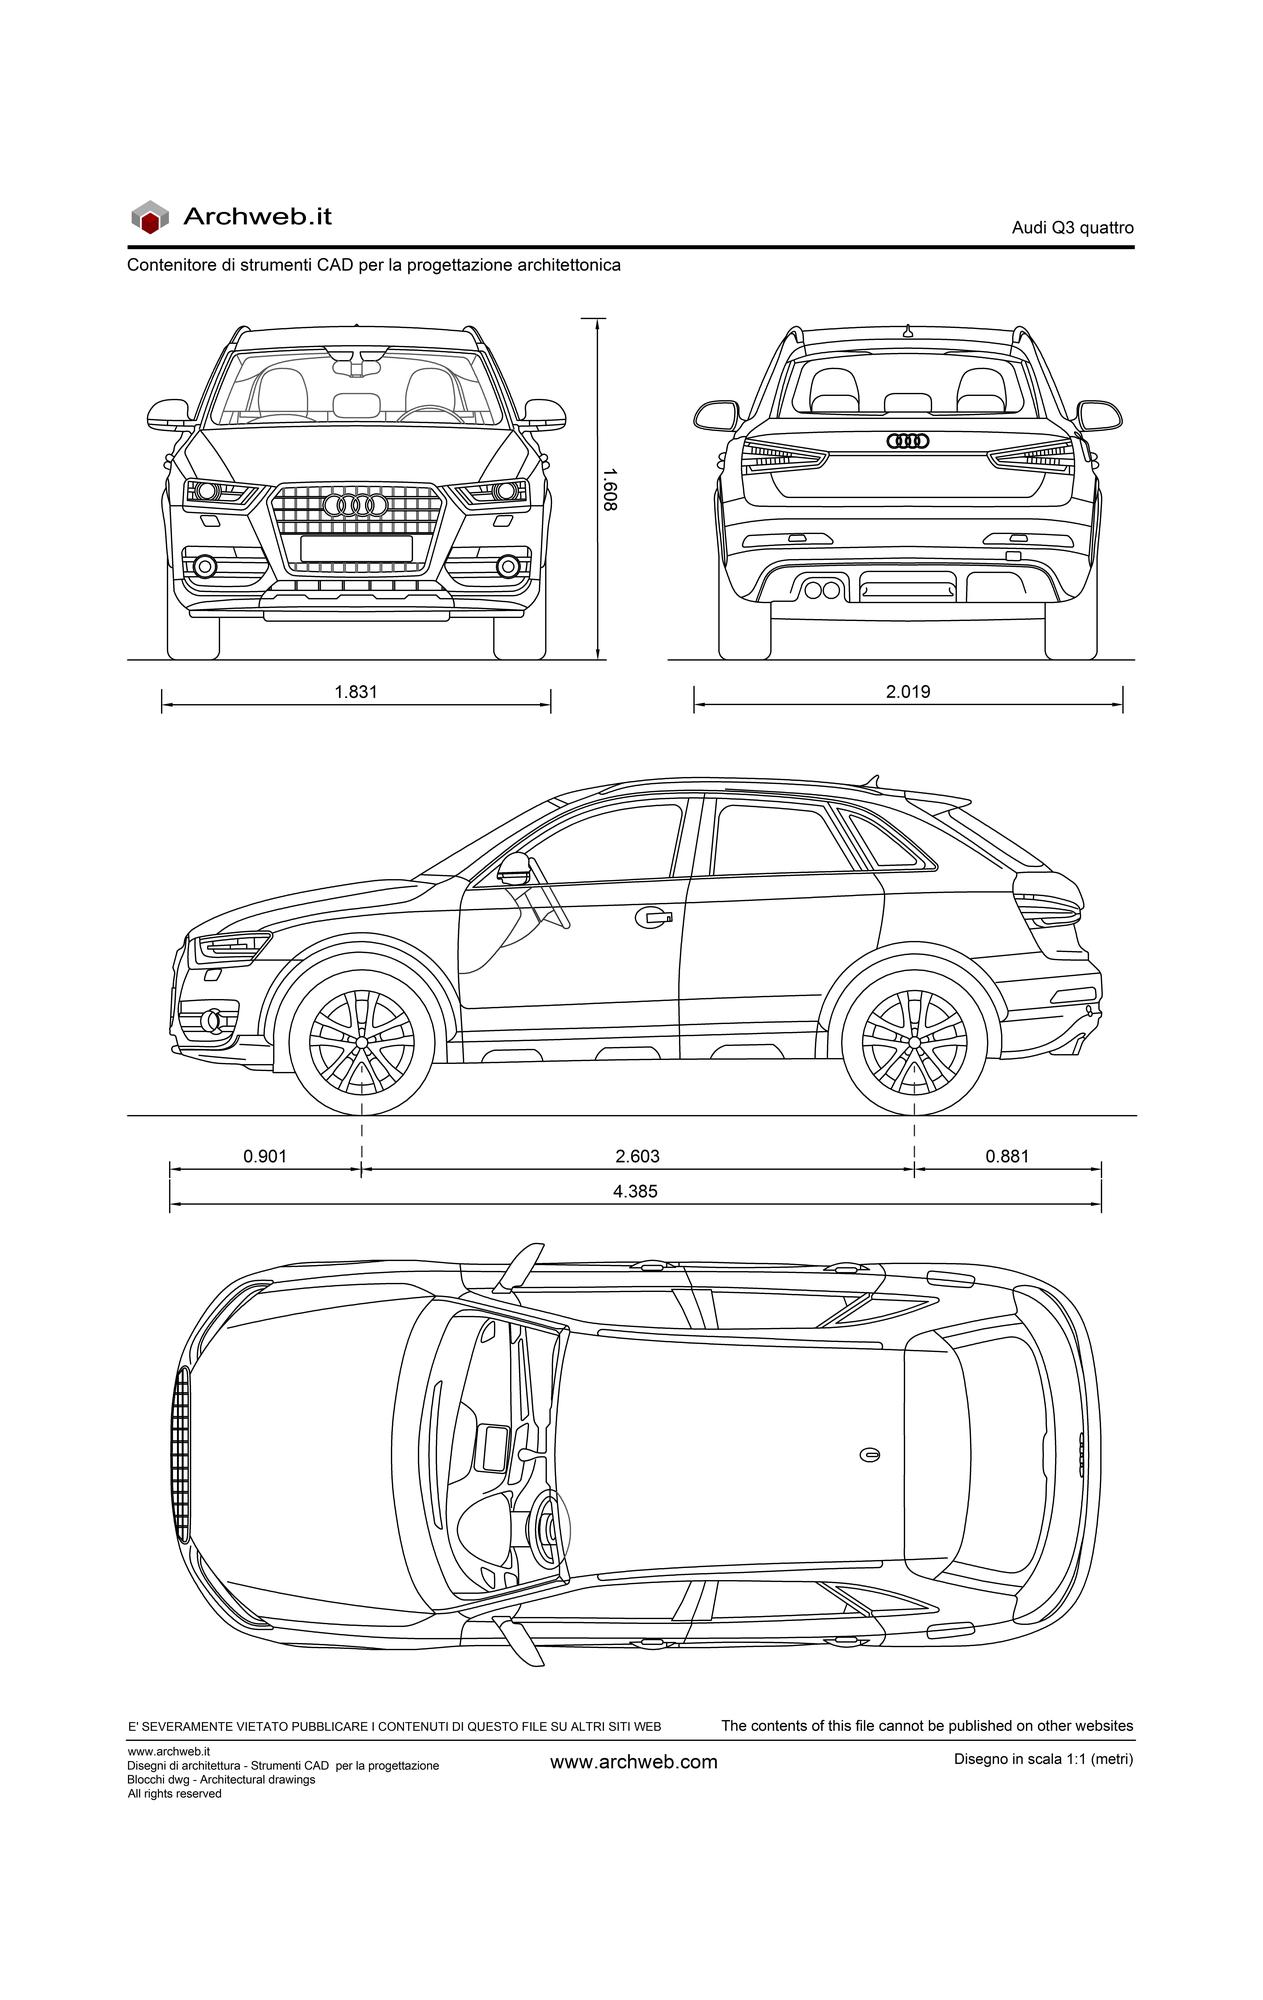 Audi Q3 quattro dwg